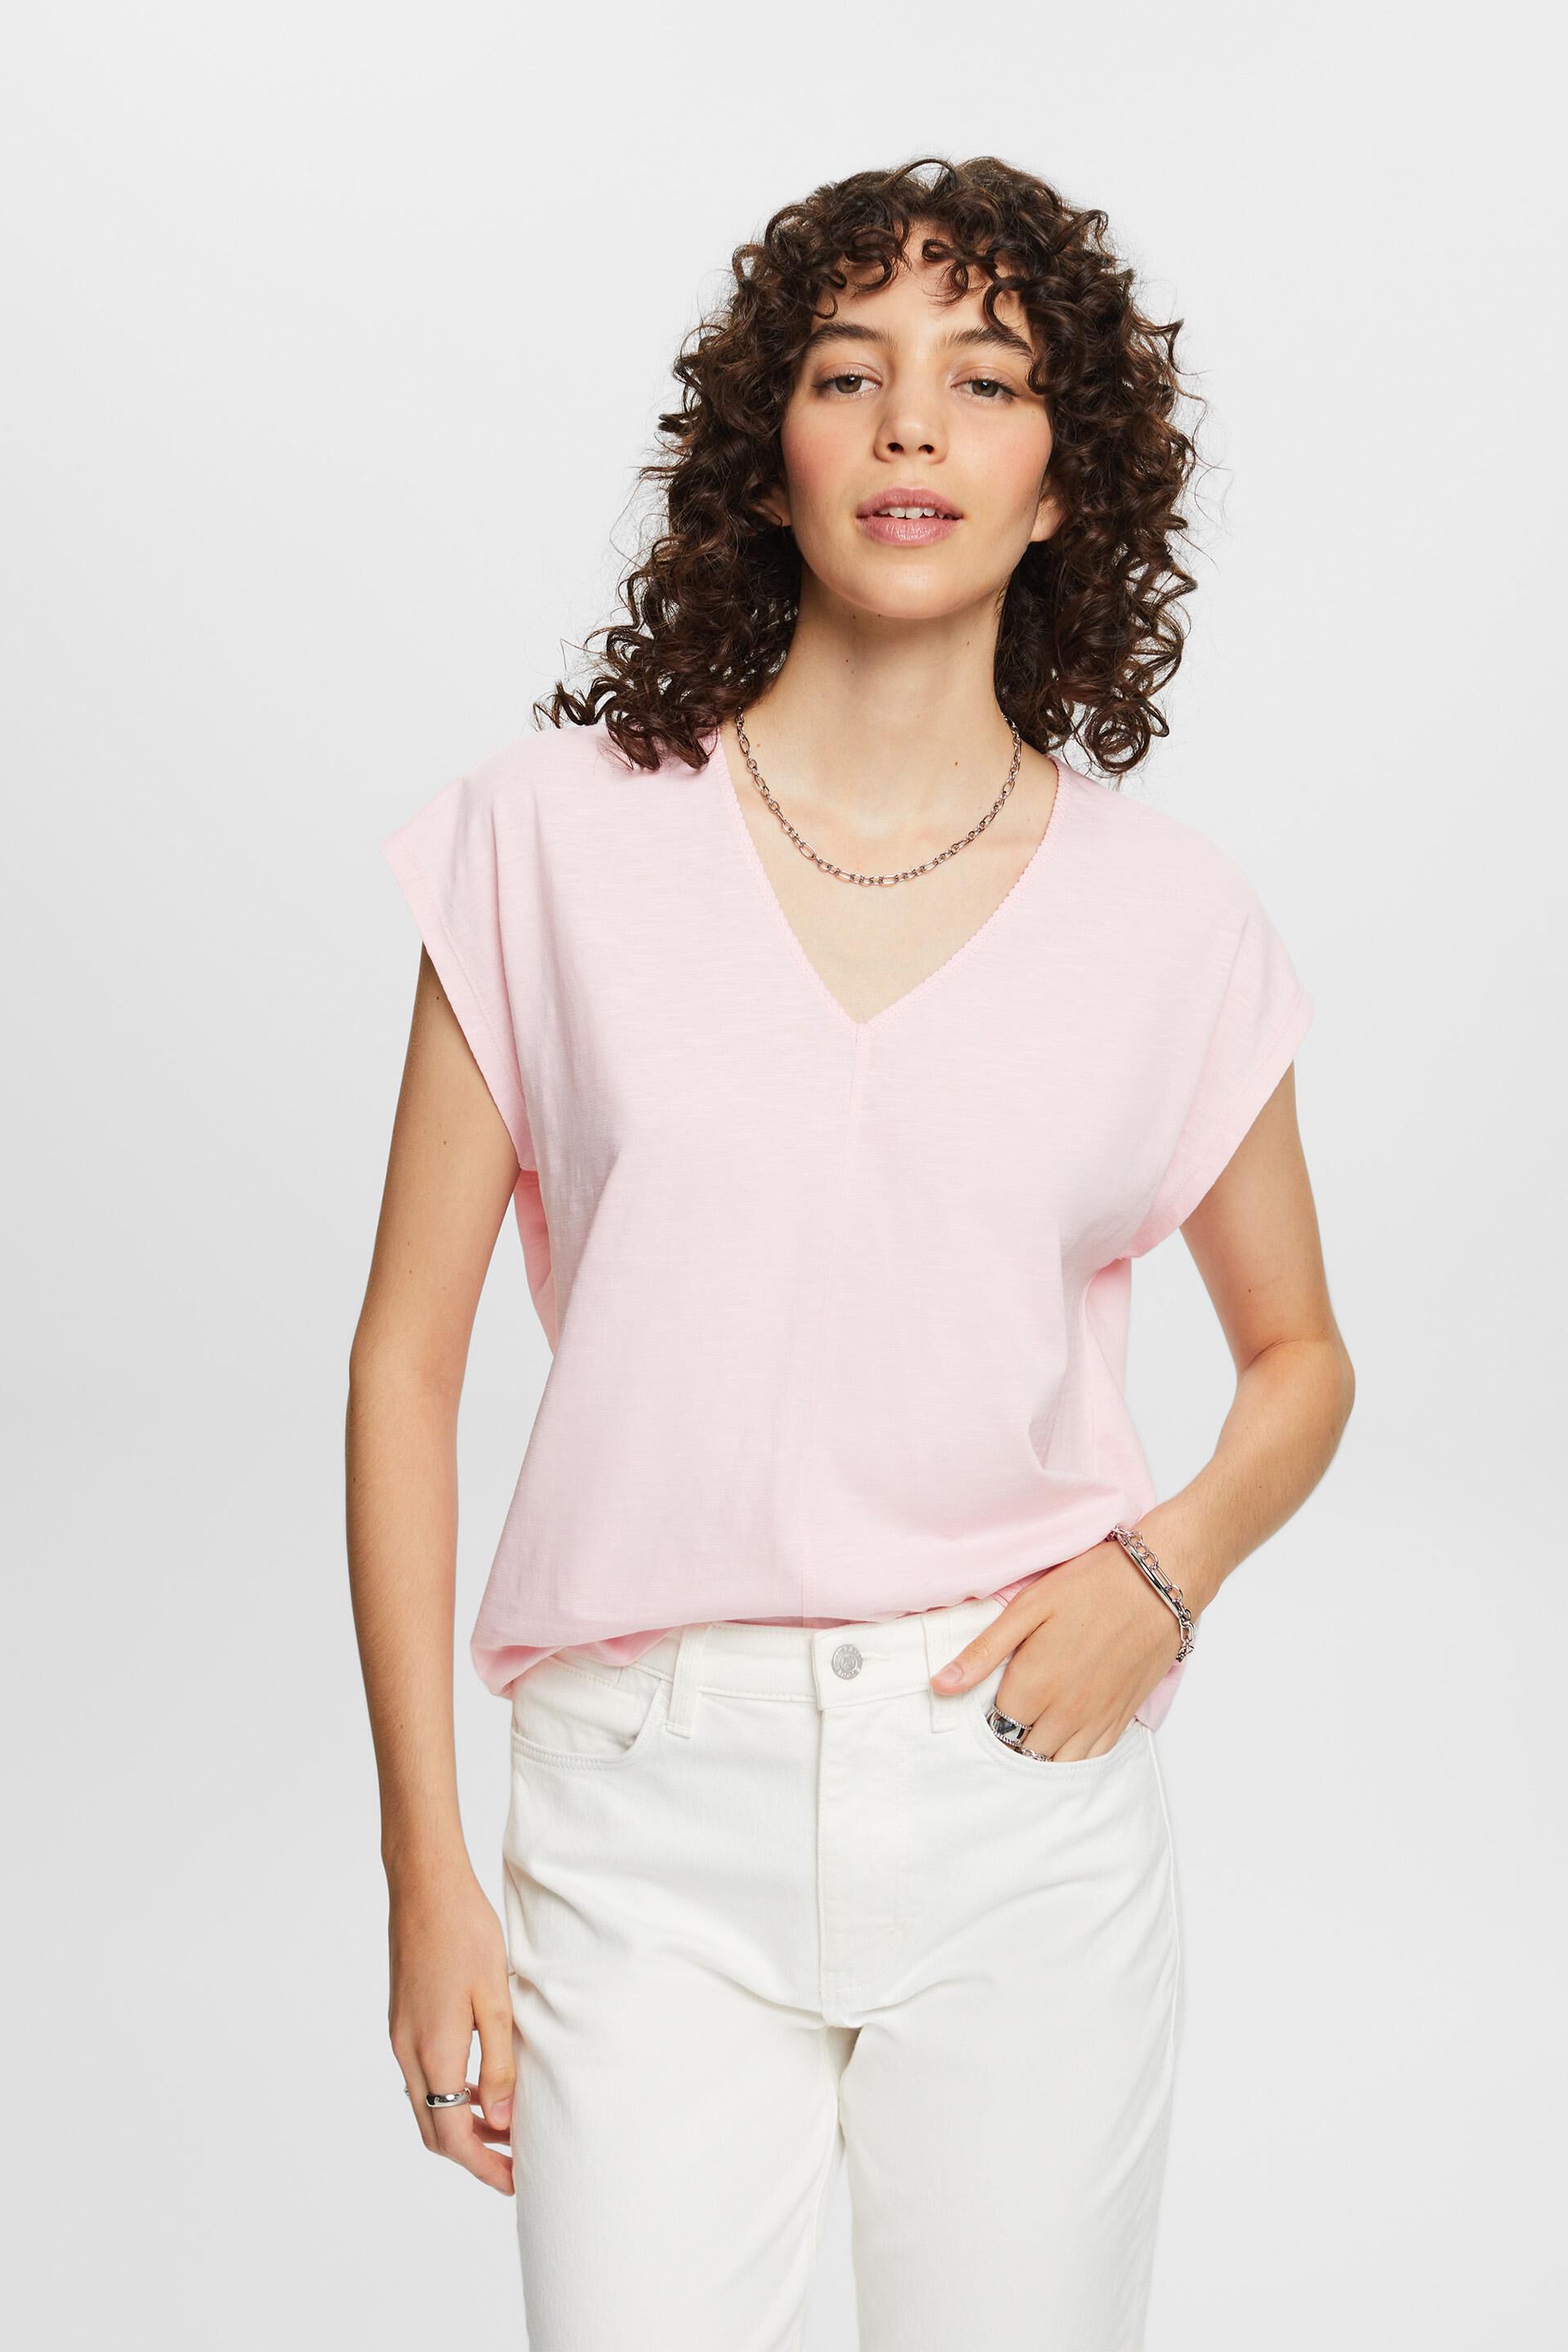 Esprit 100% decorative with V-neck T-shirt cotton stitch,